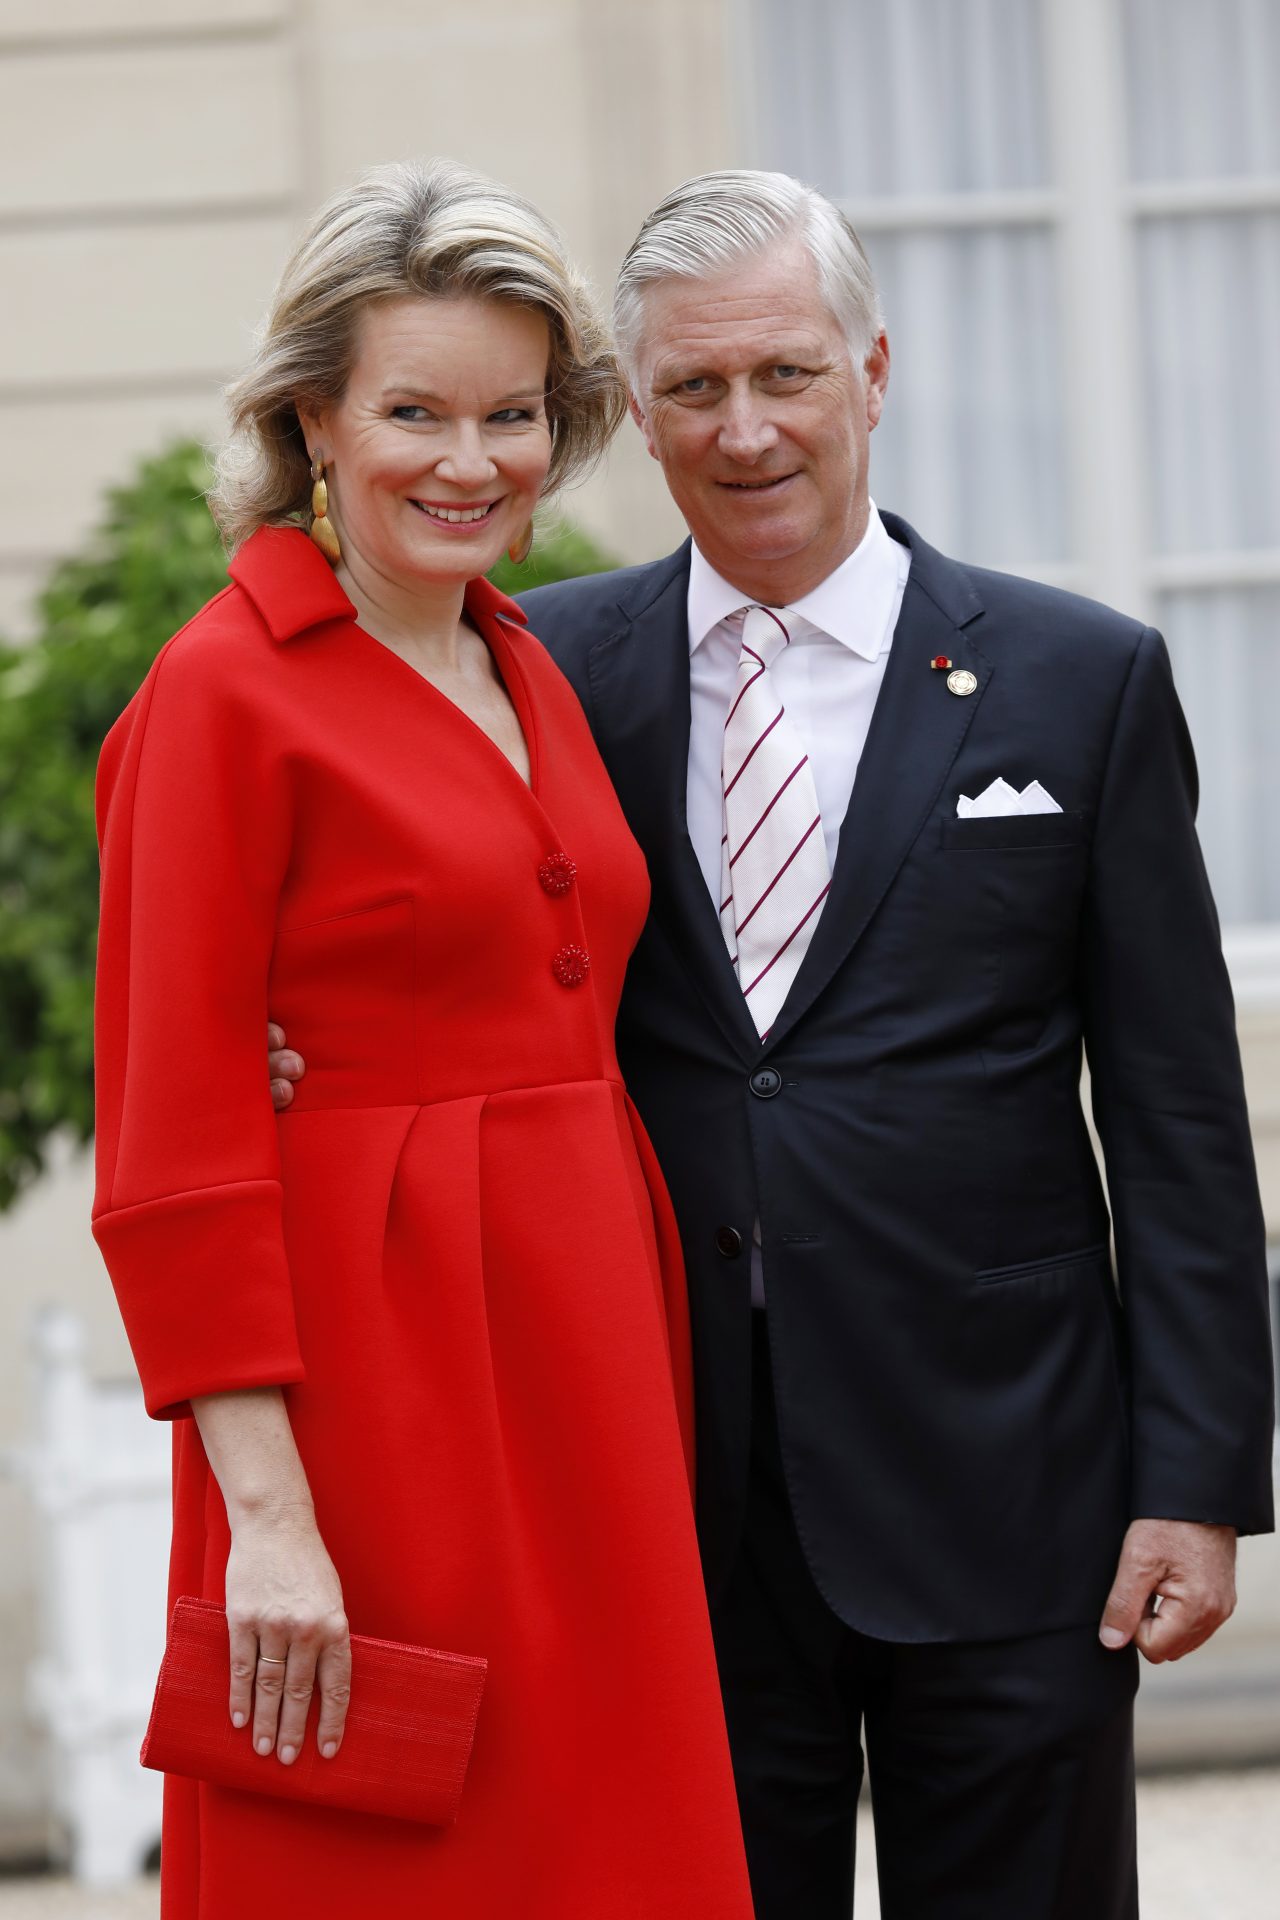 King and Queen of Belgium